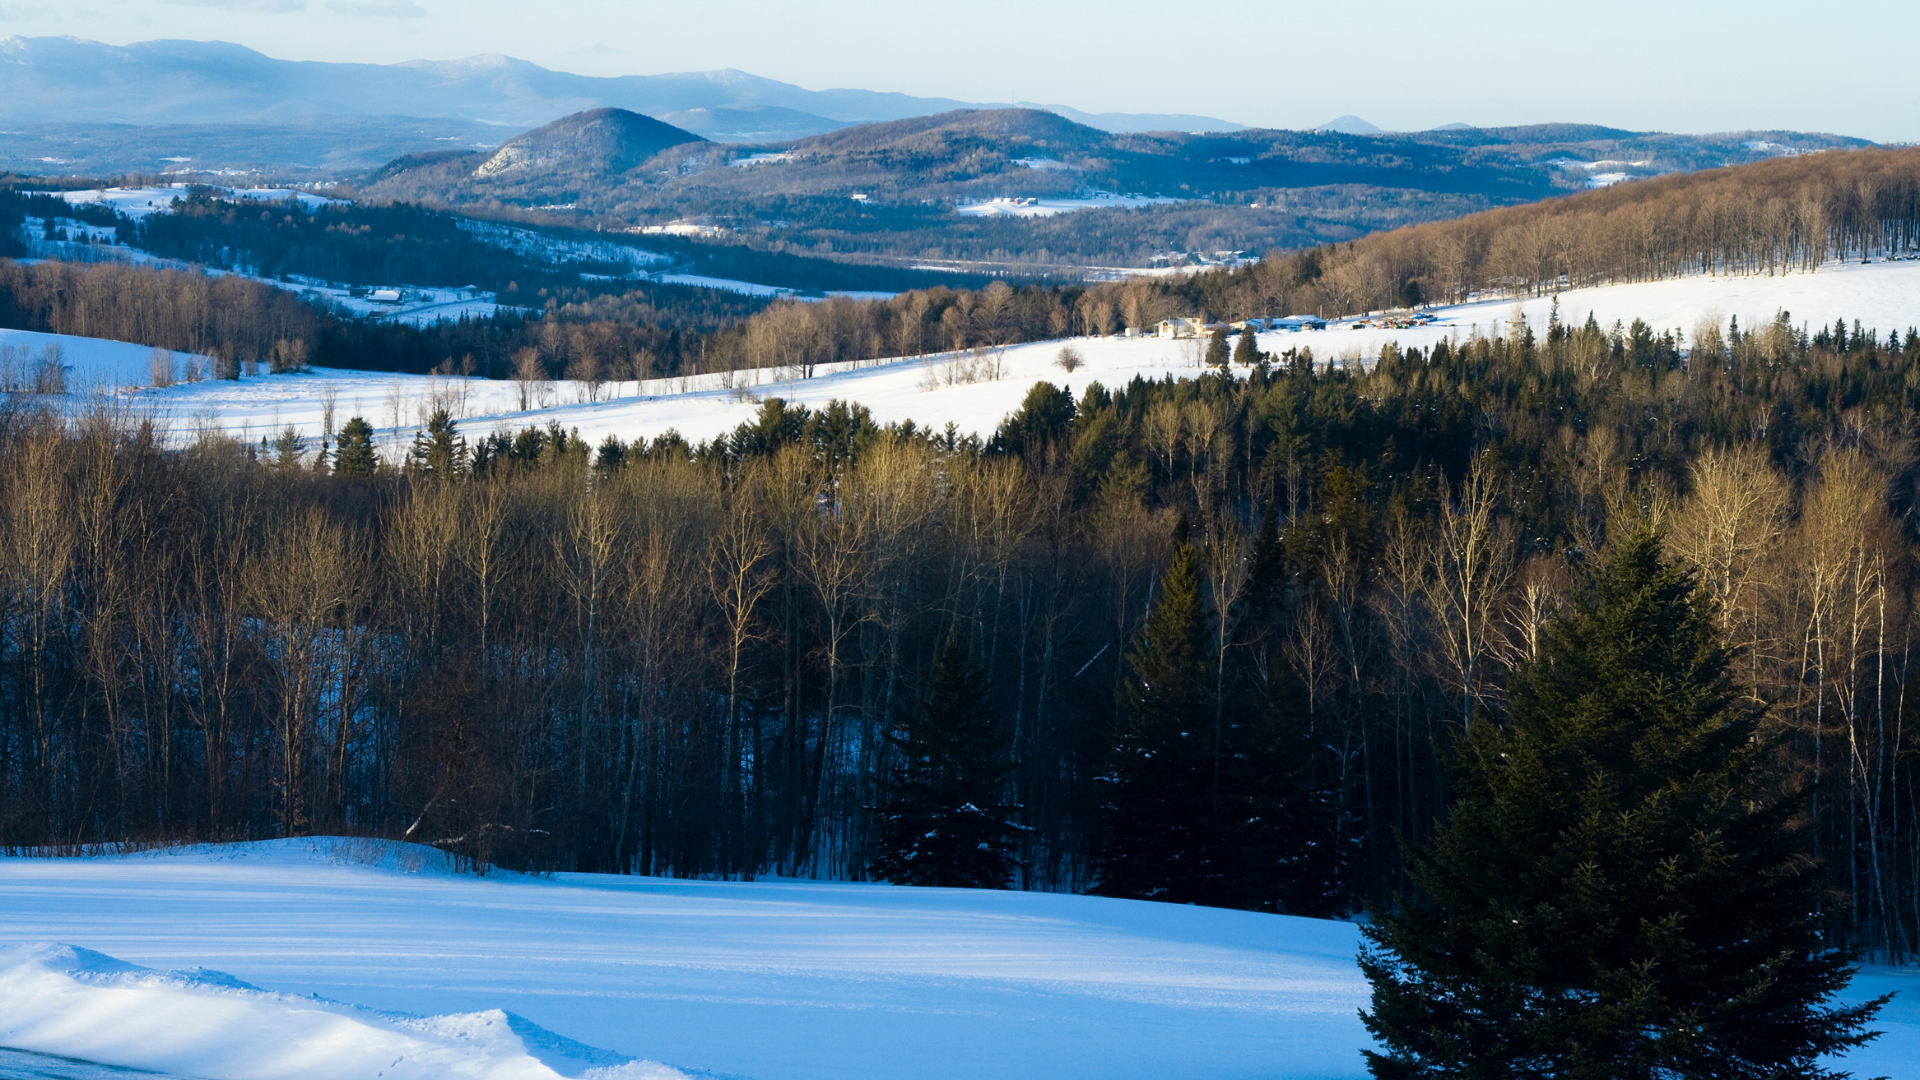 Snowy mountain range in Vermont's Northeast Kingdom.